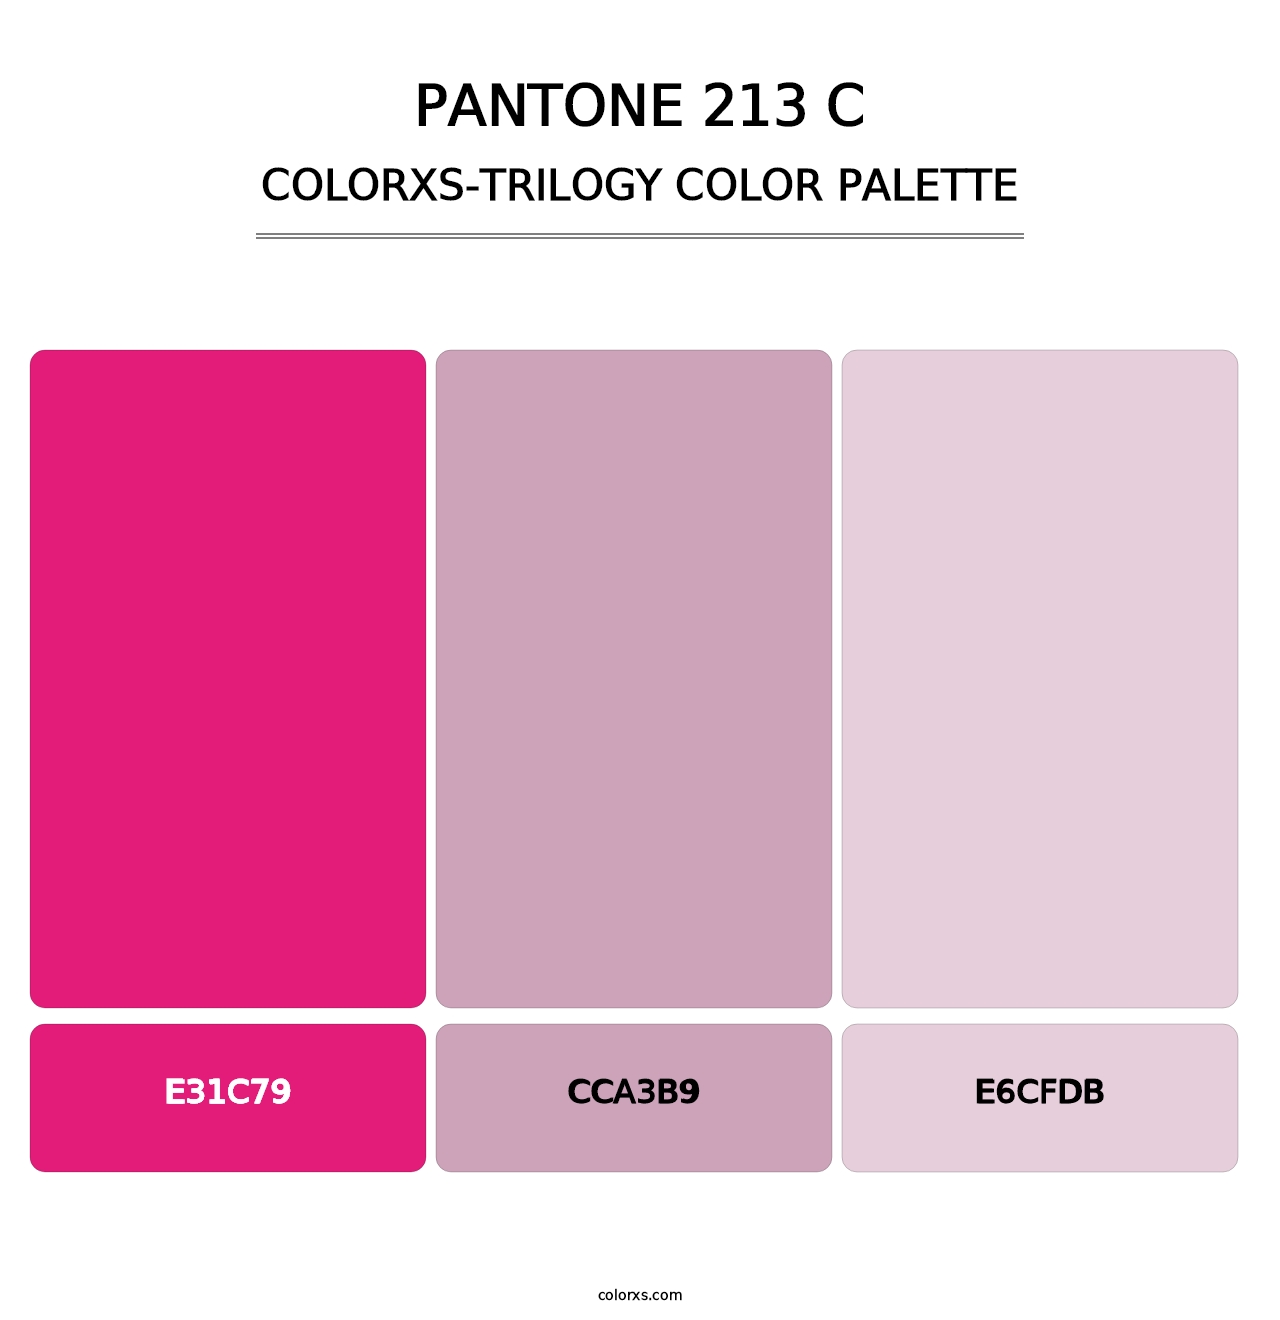 PANTONE 213 C - Colorxs Trilogy Palette